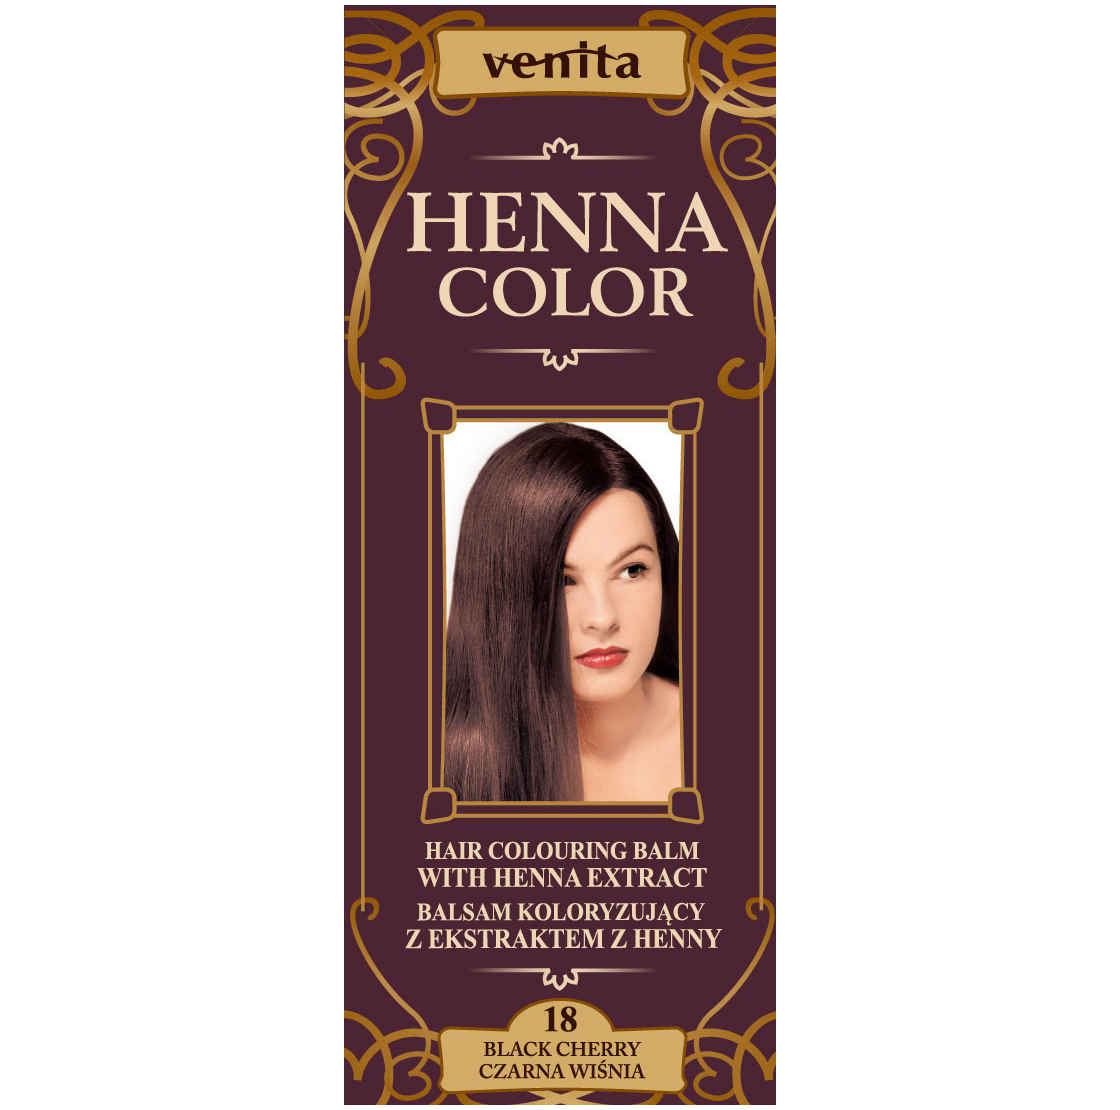 Бальзам-краска с экстрактом хны для волос 18 черешня Venita Henna Color, 75г